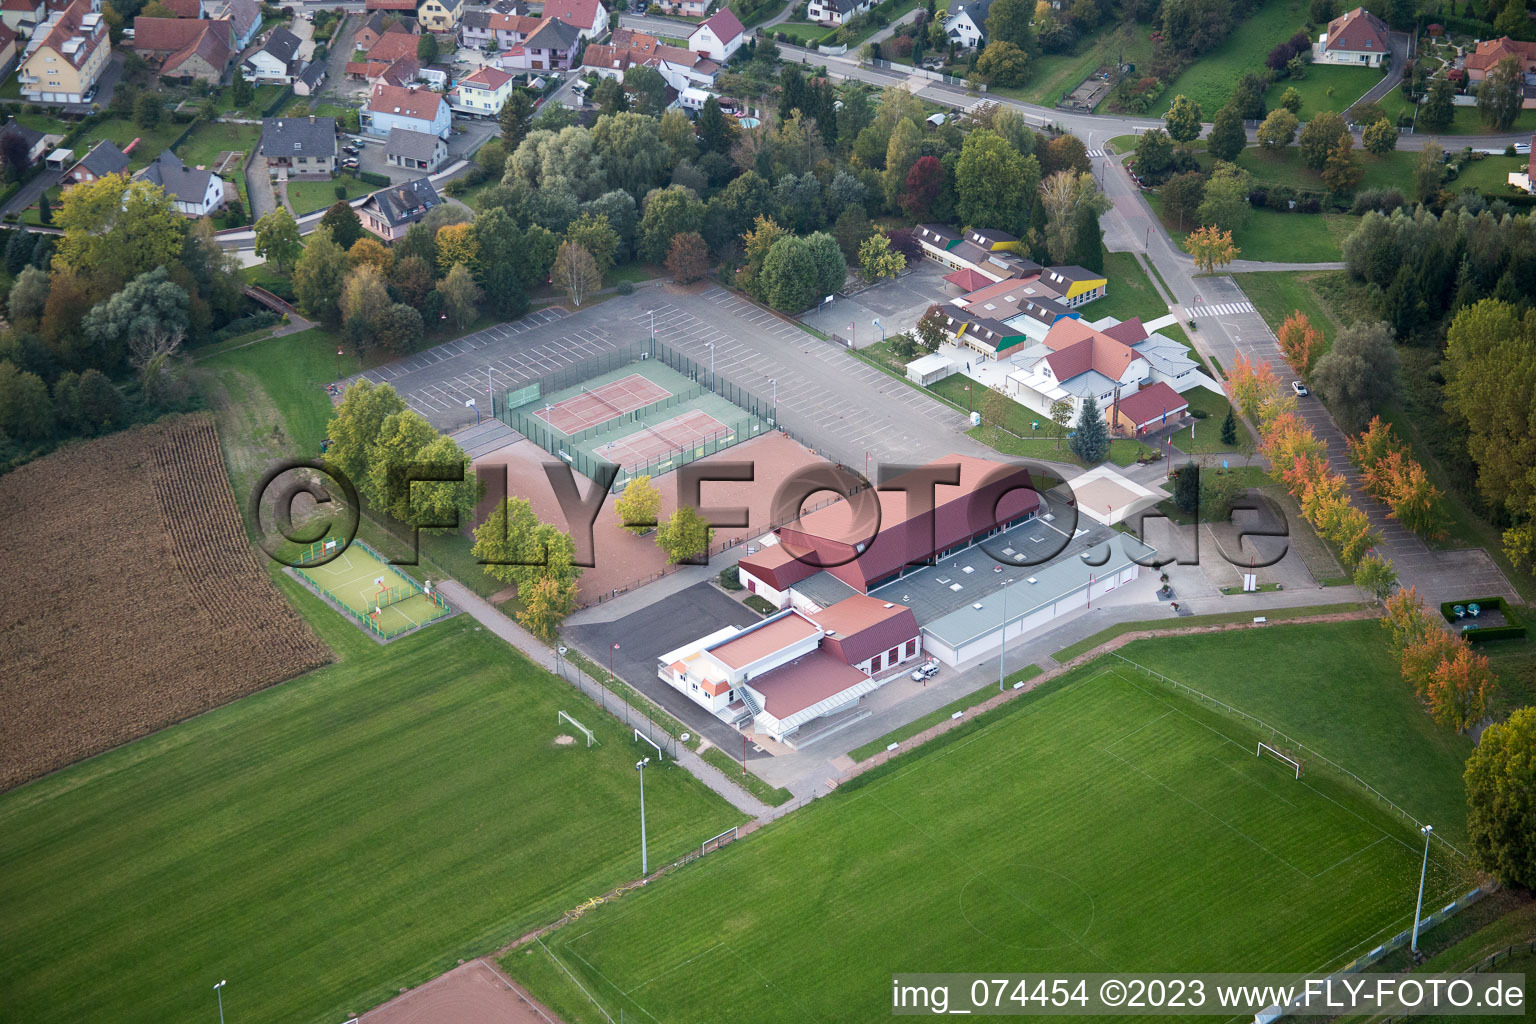 Beinheim dans le département Bas Rhin, France du point de vue du drone